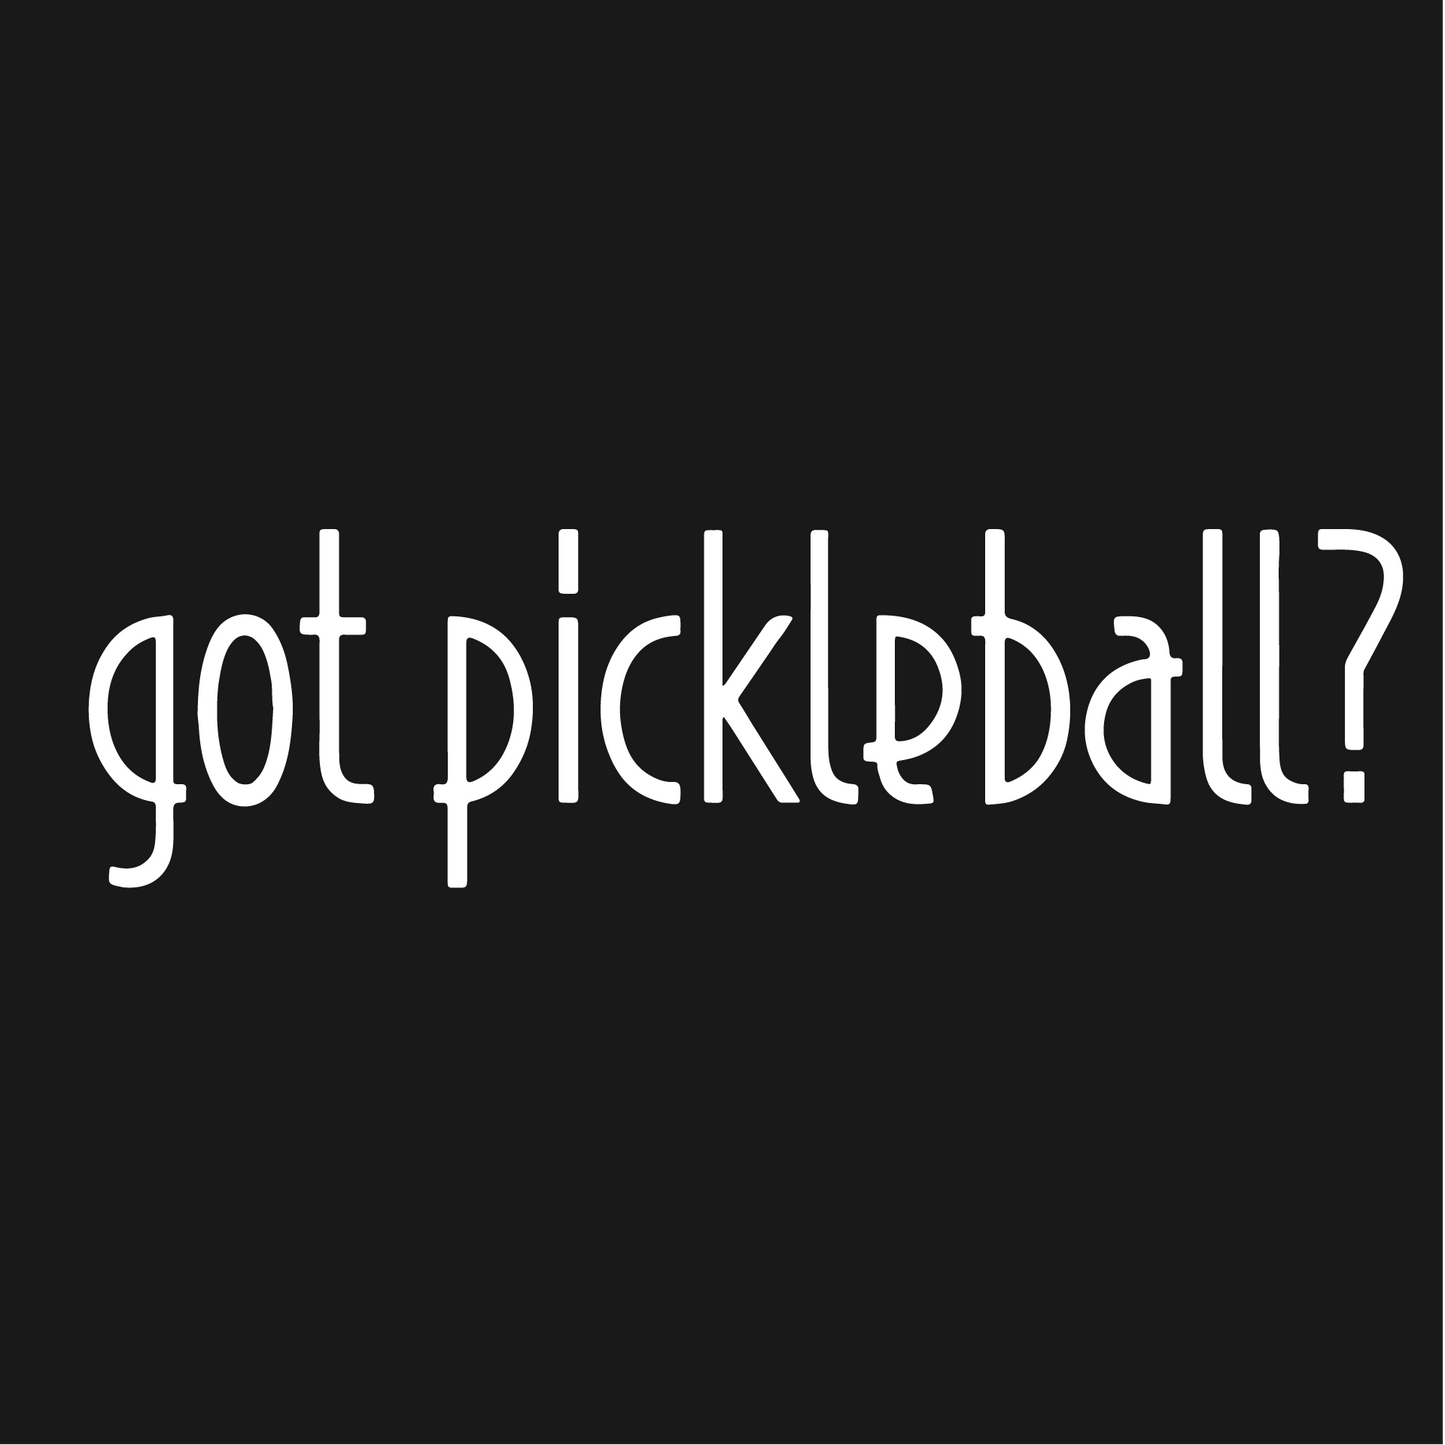 Got Pickleball? | Pickleball Visors | Moisture Wicking 100% Polyester